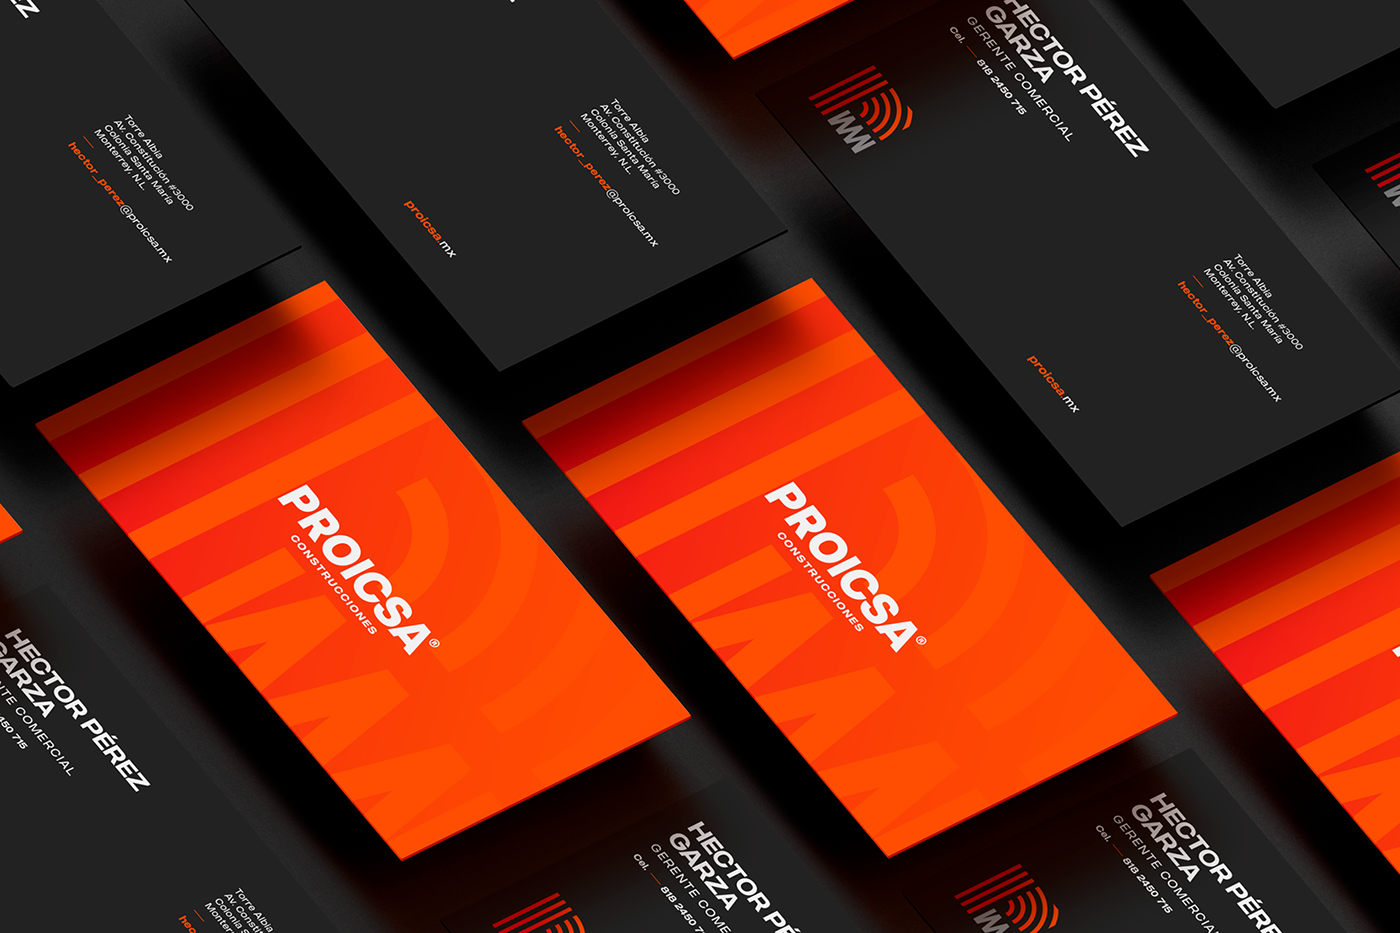 Brand Design business card diseño gráfico Logotipo marca tarjeta de presentación Tarjetas visual identity